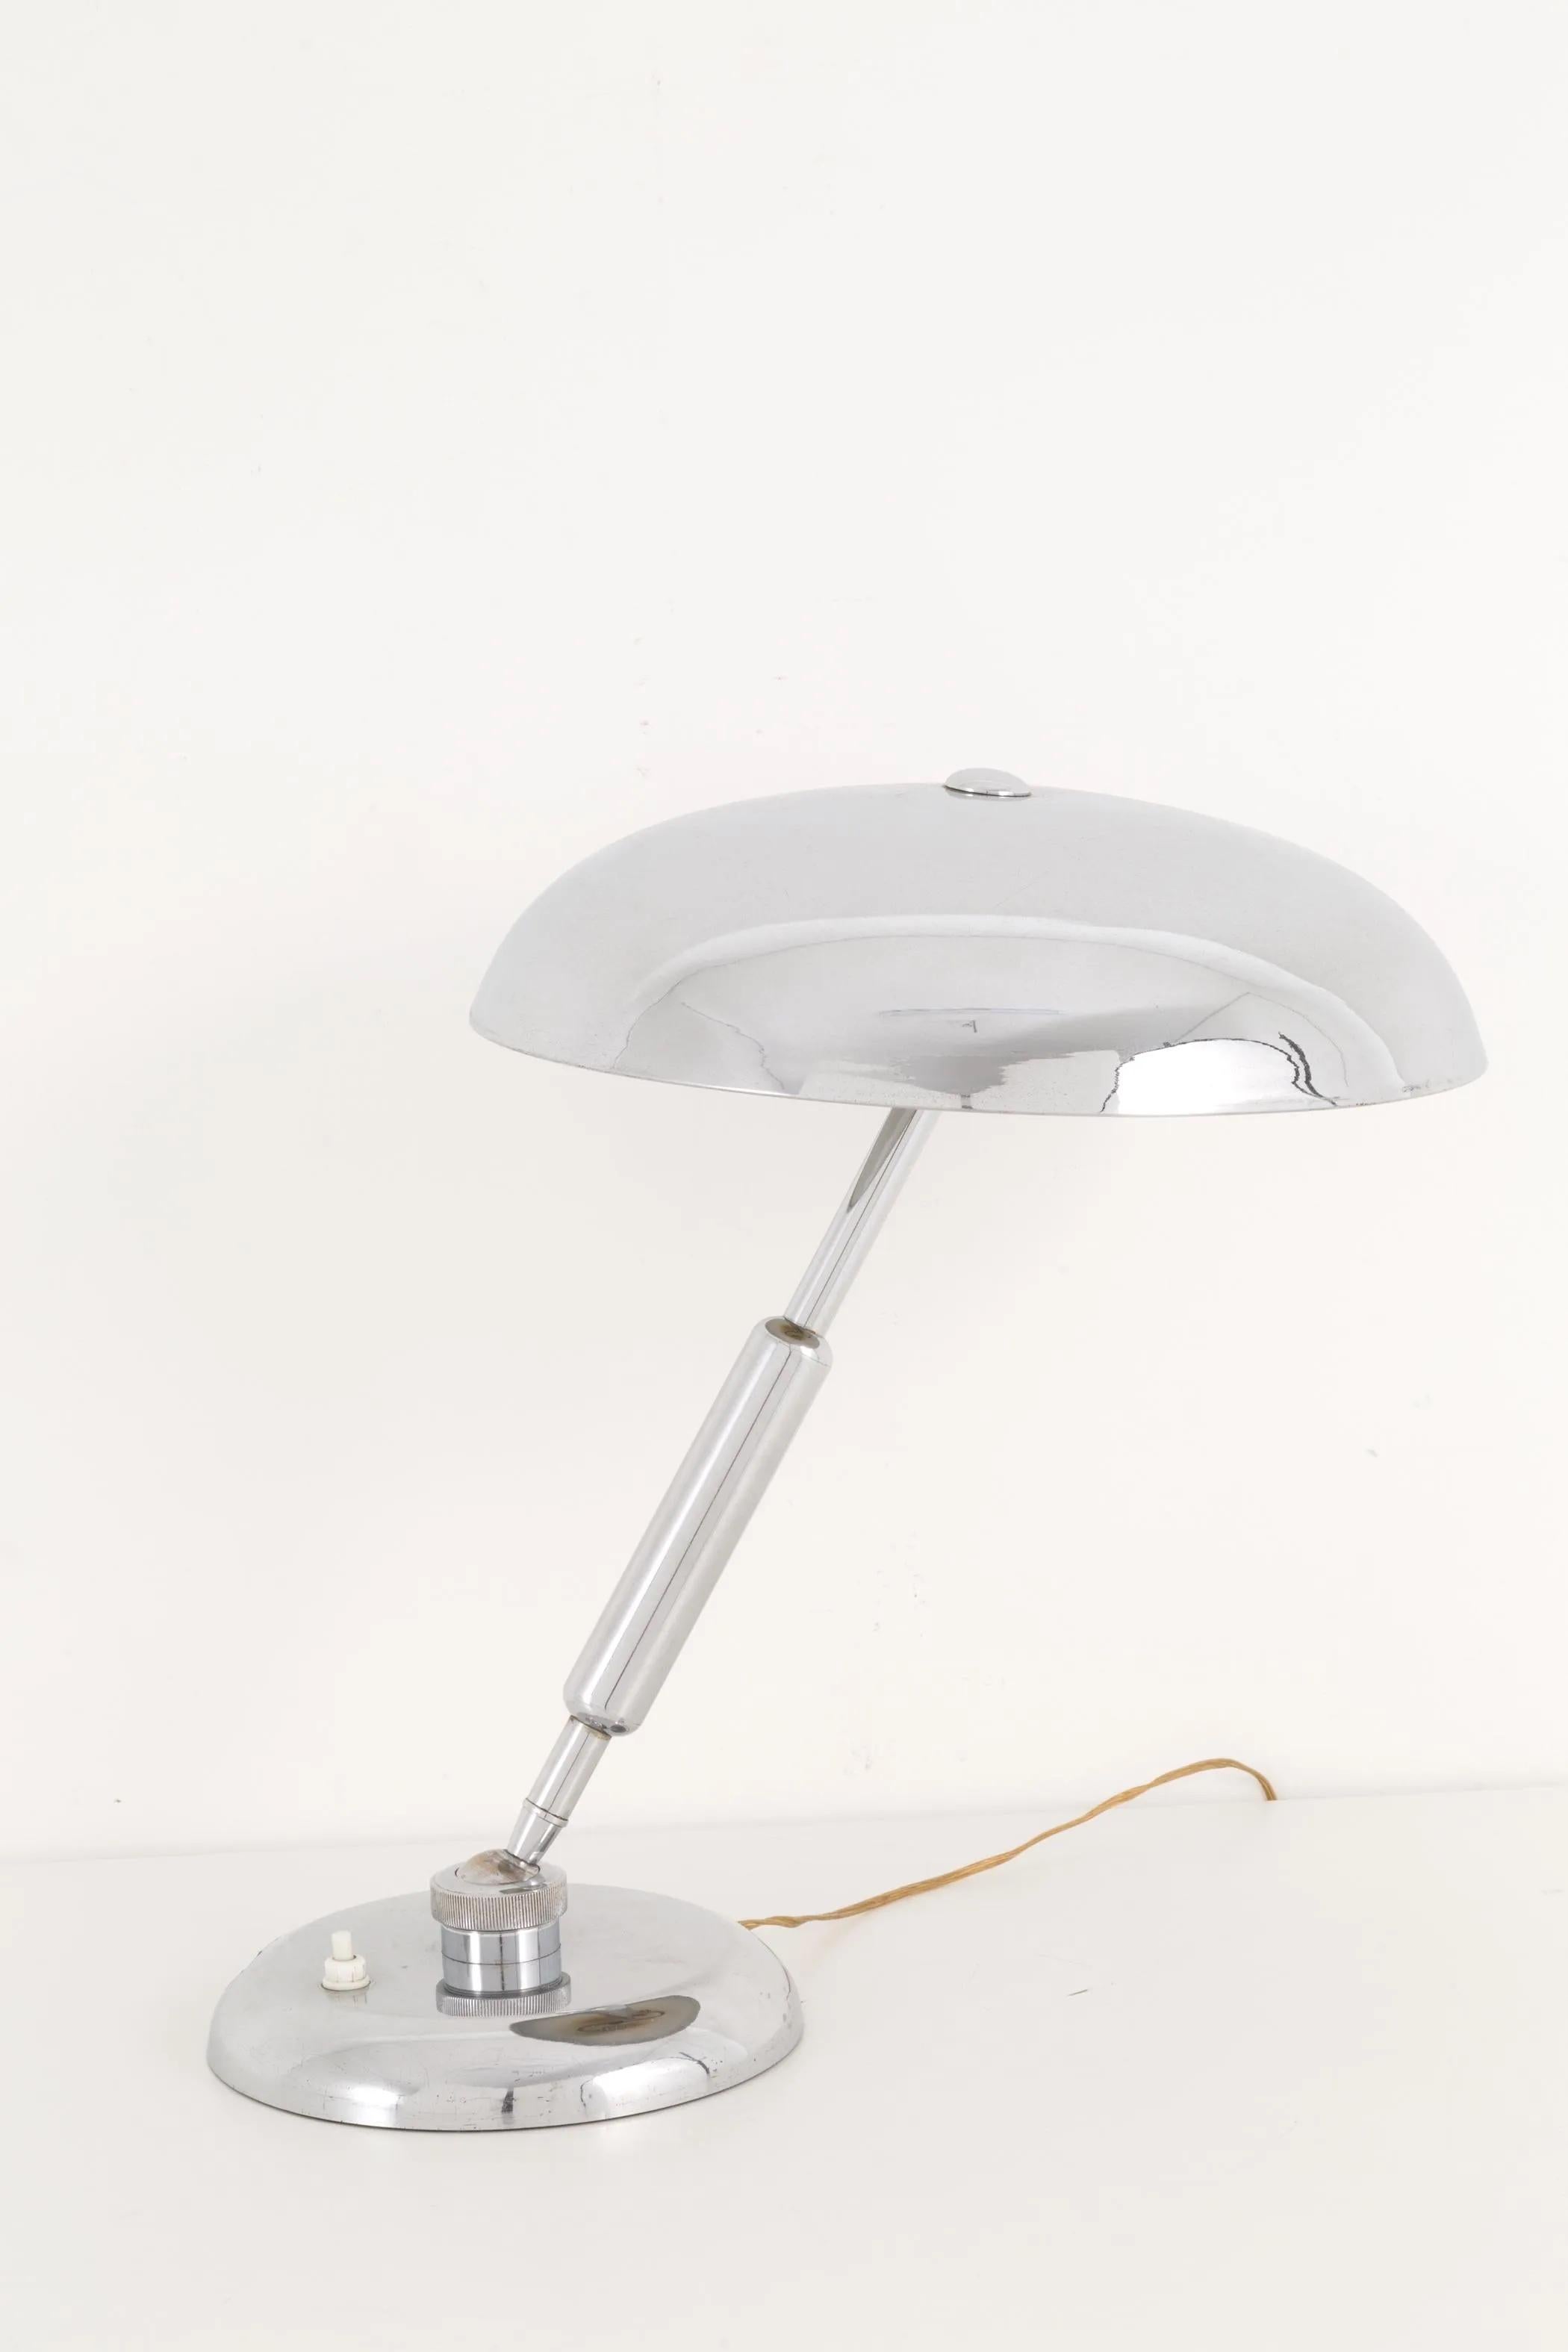 Magnifique lampe de table ou de bureau de haute qualité en laiton nickelé poli d'Italie, années 1940-1950, avec une base ronde lestée et une énorme rotule à partir de laquelle la tige robuste peut pivoter ~140 x 360 degrés. La tête ronde en forme de